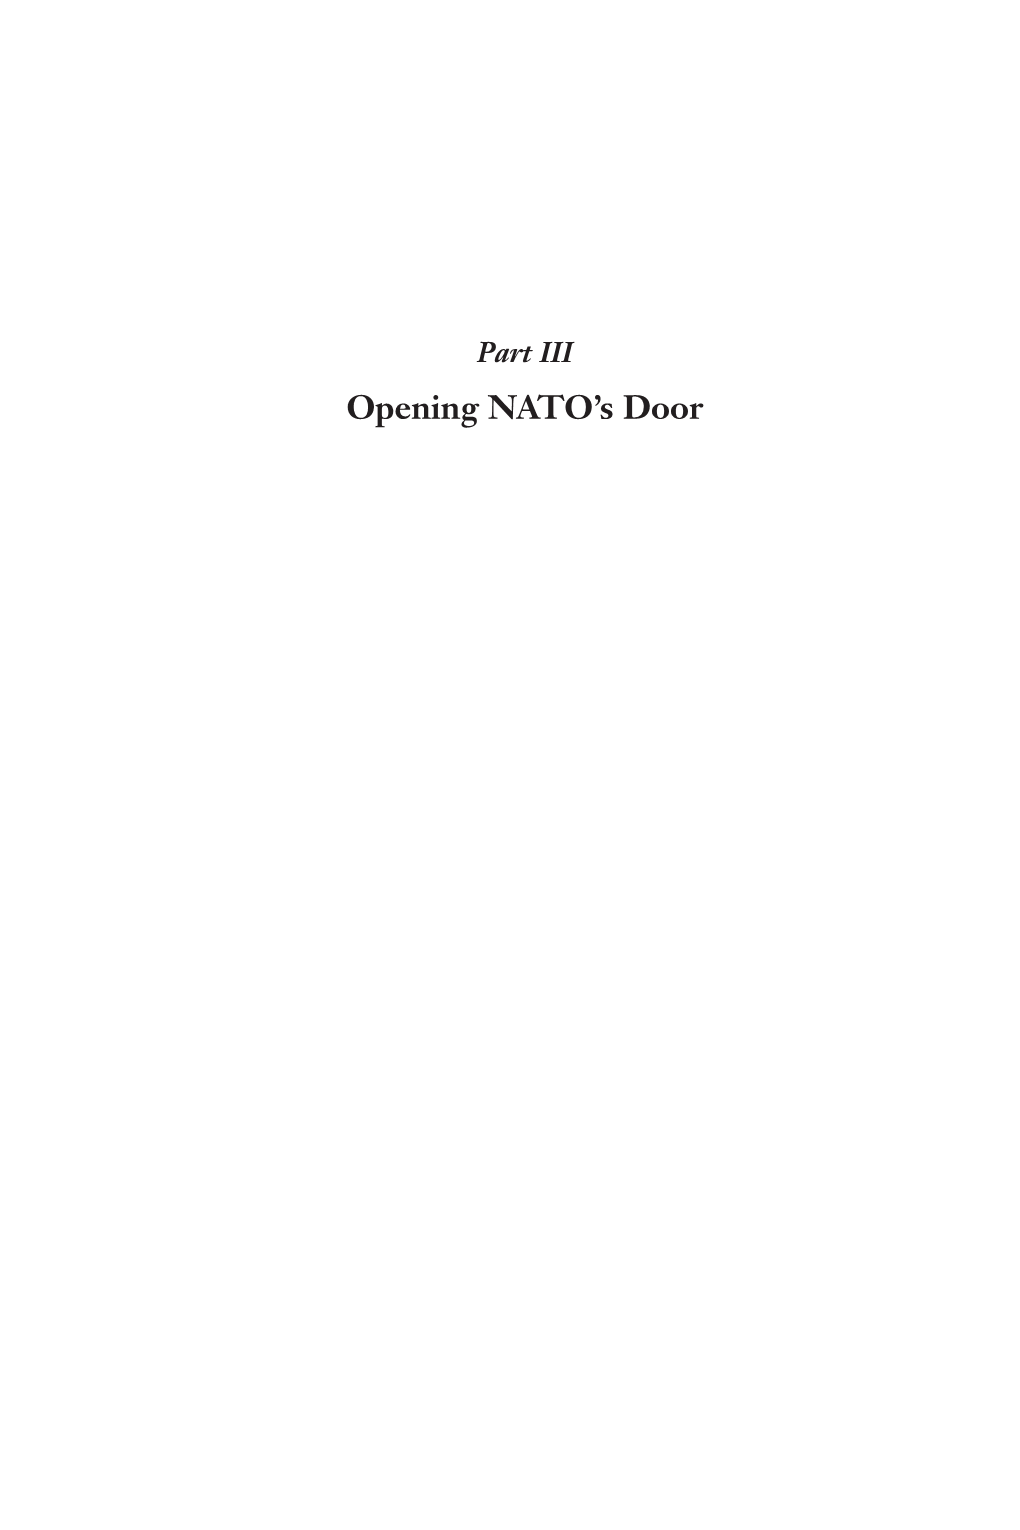 Opening NATO's Door